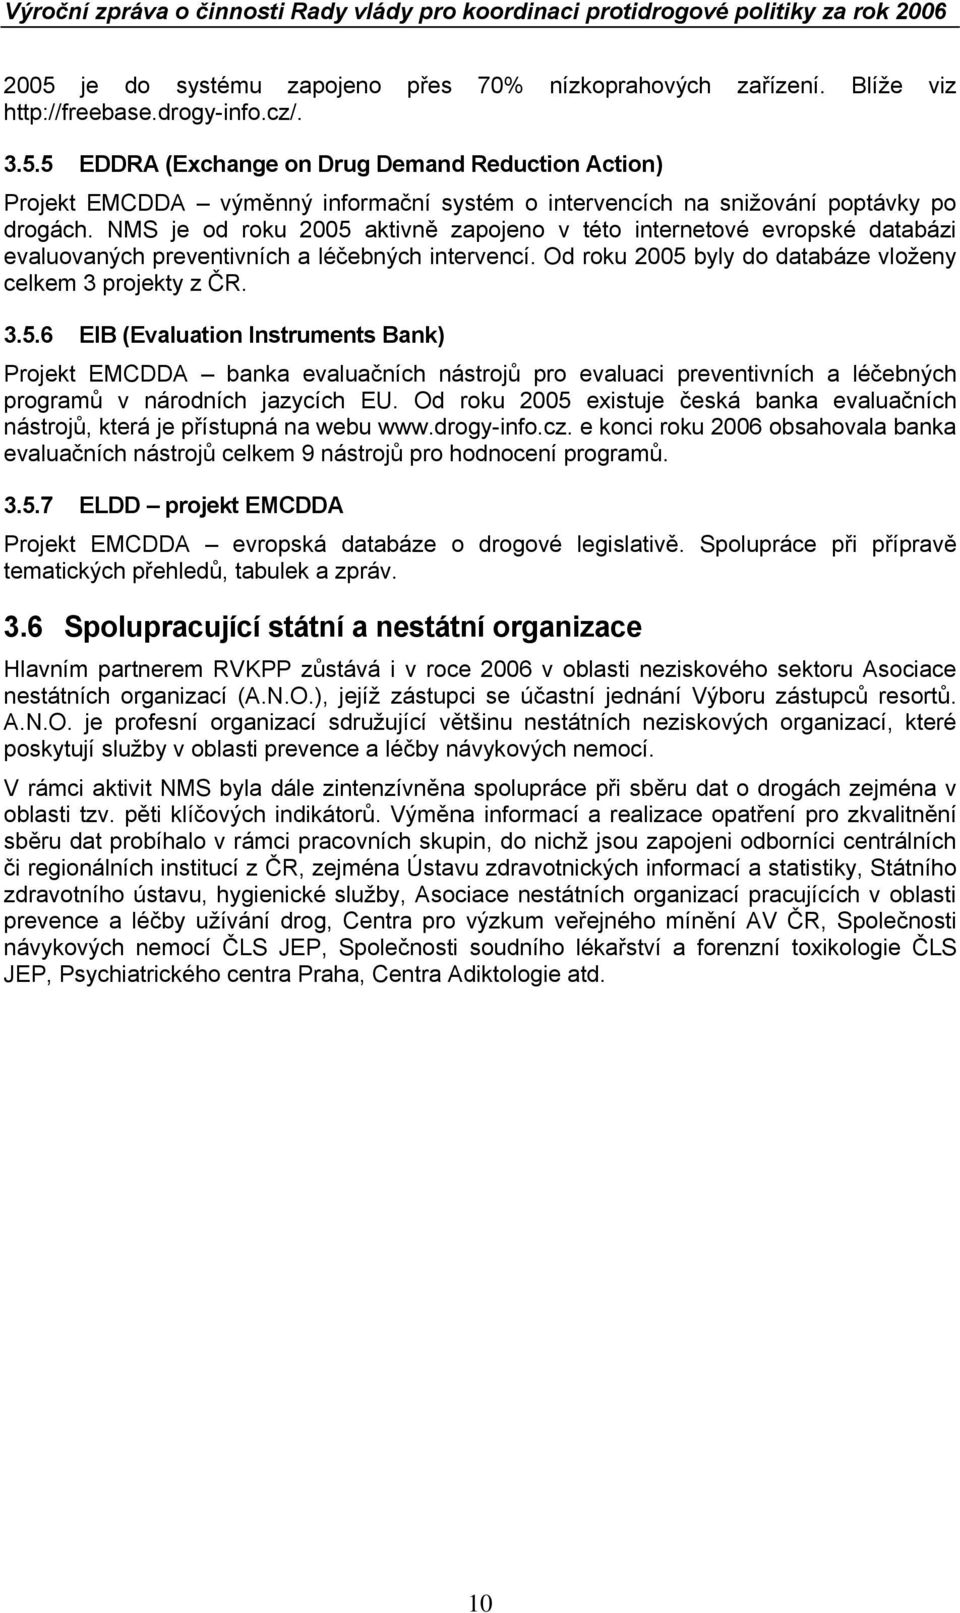 Od roku 2005 existuje česká banka evaluačních nástrojů, která je přístupná na webu www.drogy-info.cz. e konci roku 2006 obsahovala banka evaluačních nástrojů celkem 9 nástrojů pro hodnocení programů.